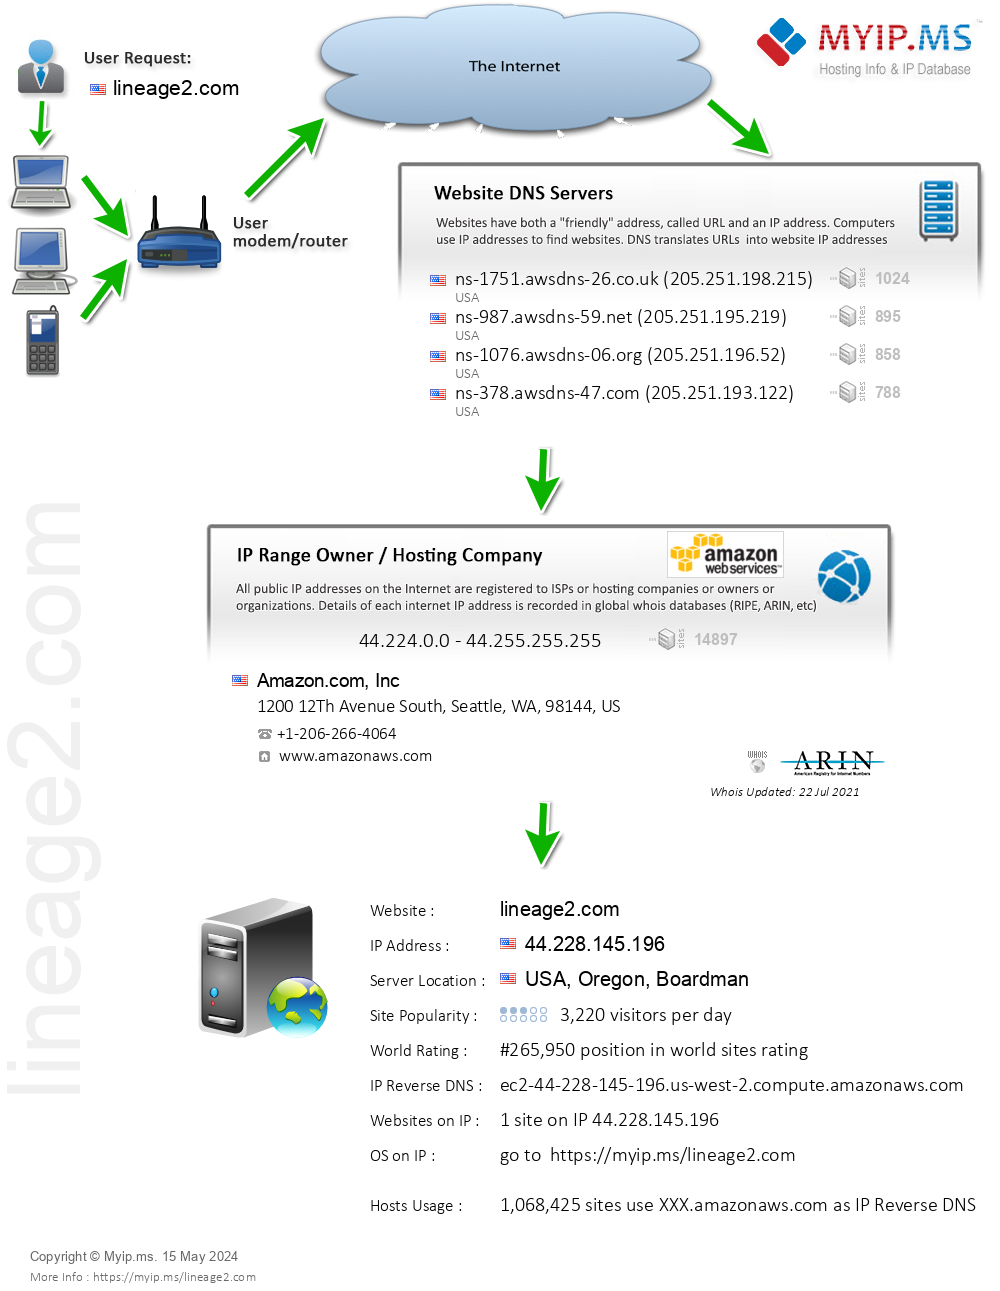 Lineage2.com - Website Hosting Visual IP Diagram